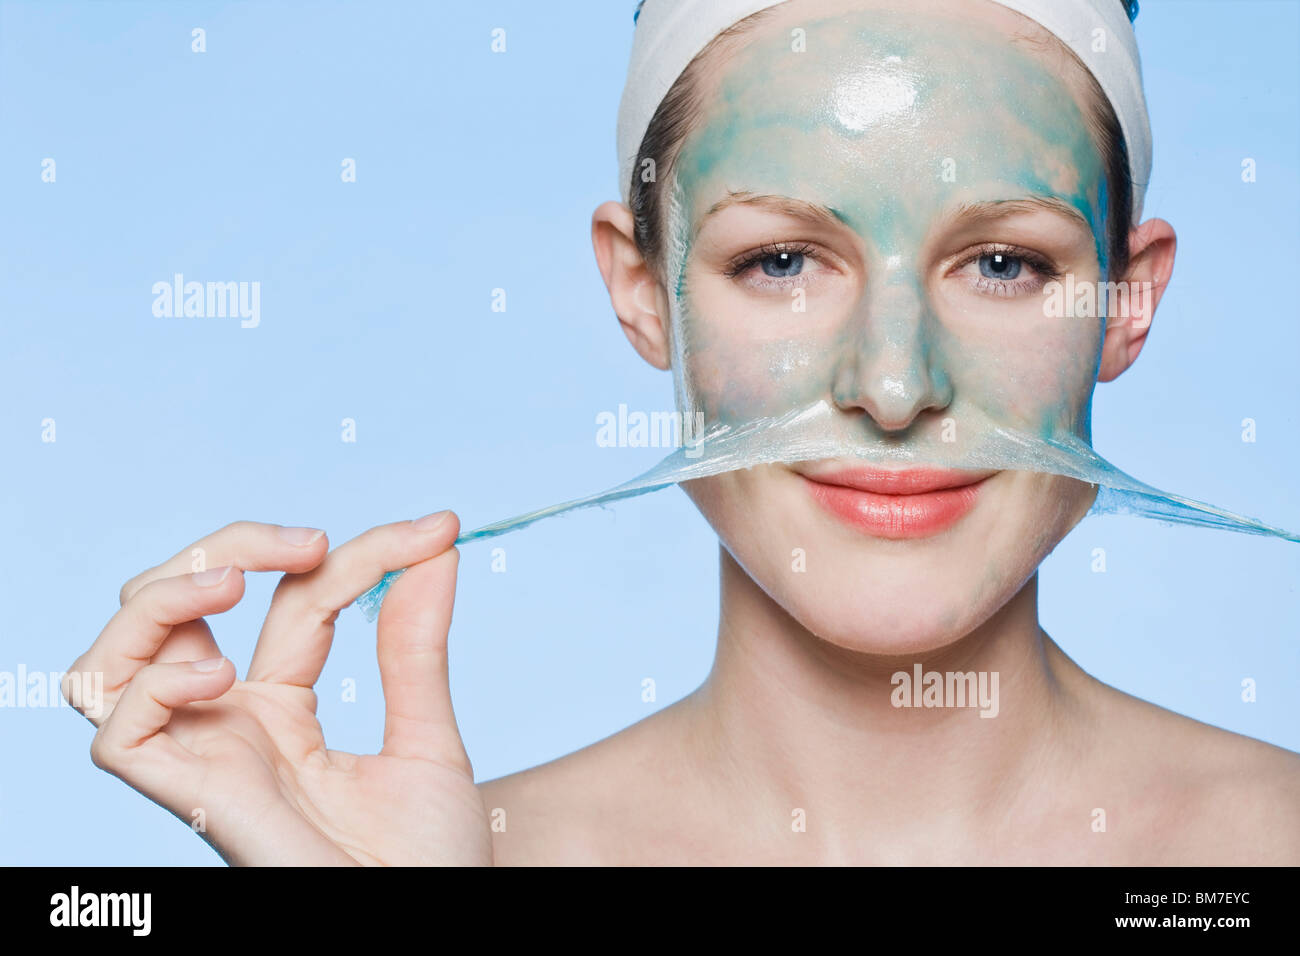 Eine Frau Eine Gesichtsmaske Aus Dem Gesicht Peeling Stockfotografie Alamy